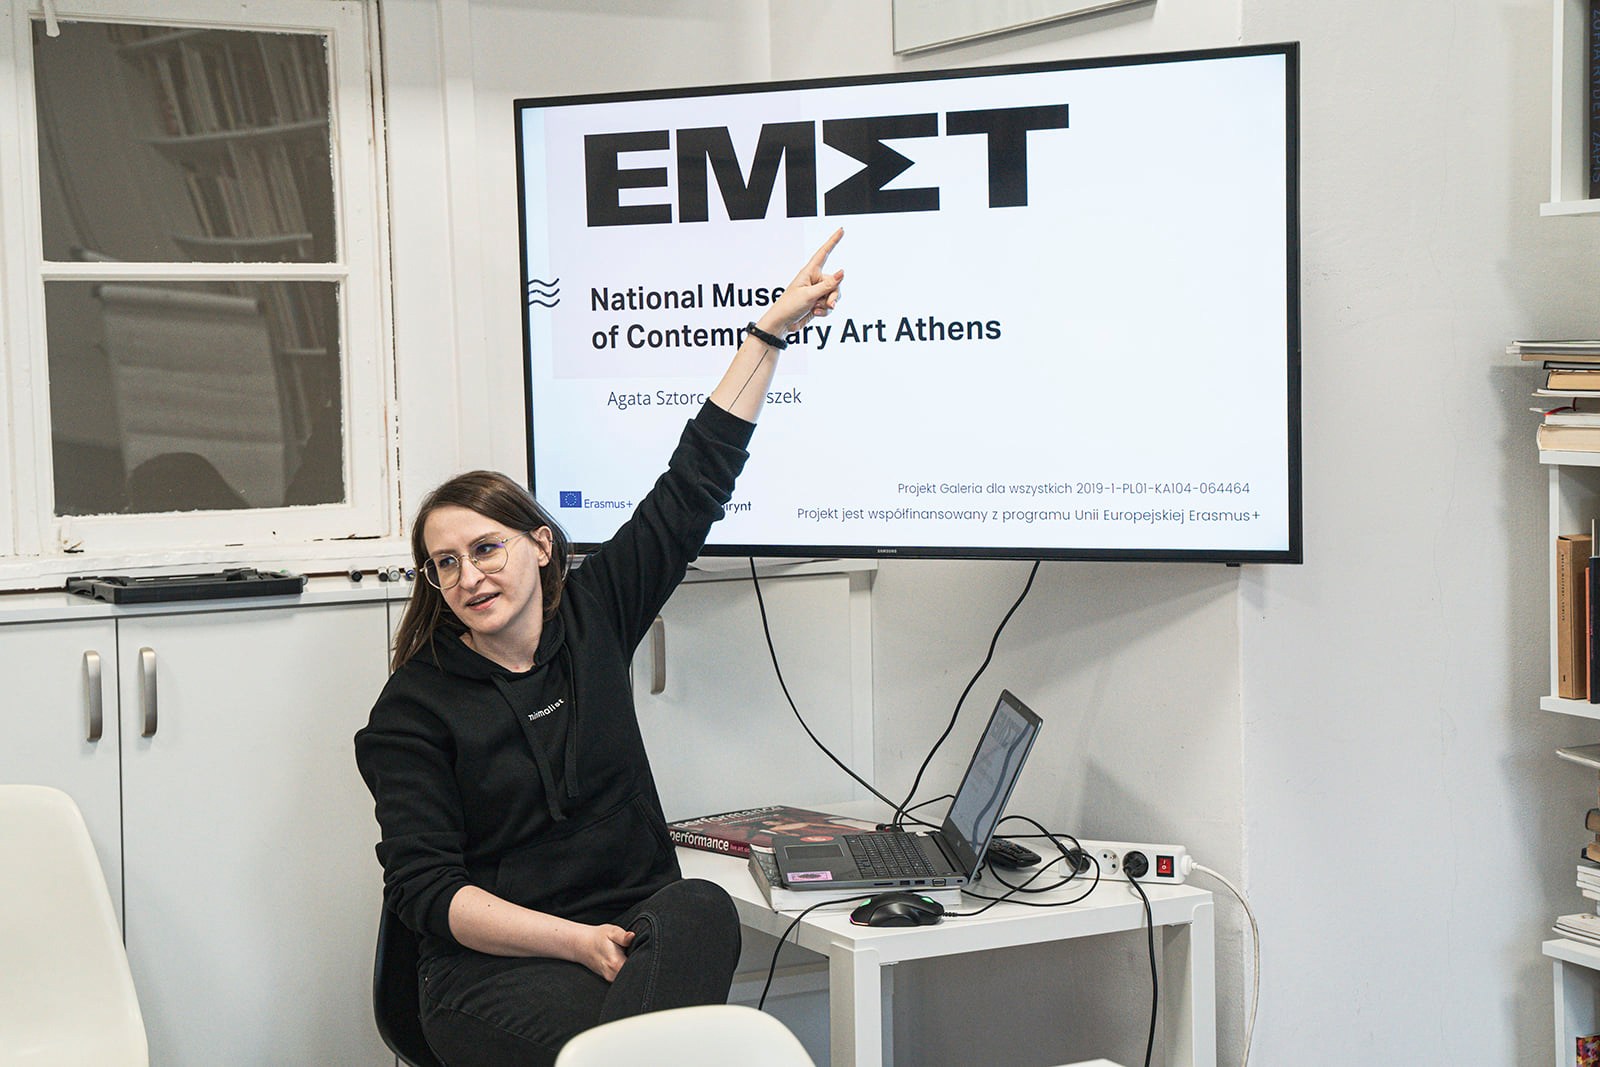 Prezentacja Agaty Sztorc-Gromaszek na temat na EMST w Atenach, Lublin, marzec 2022